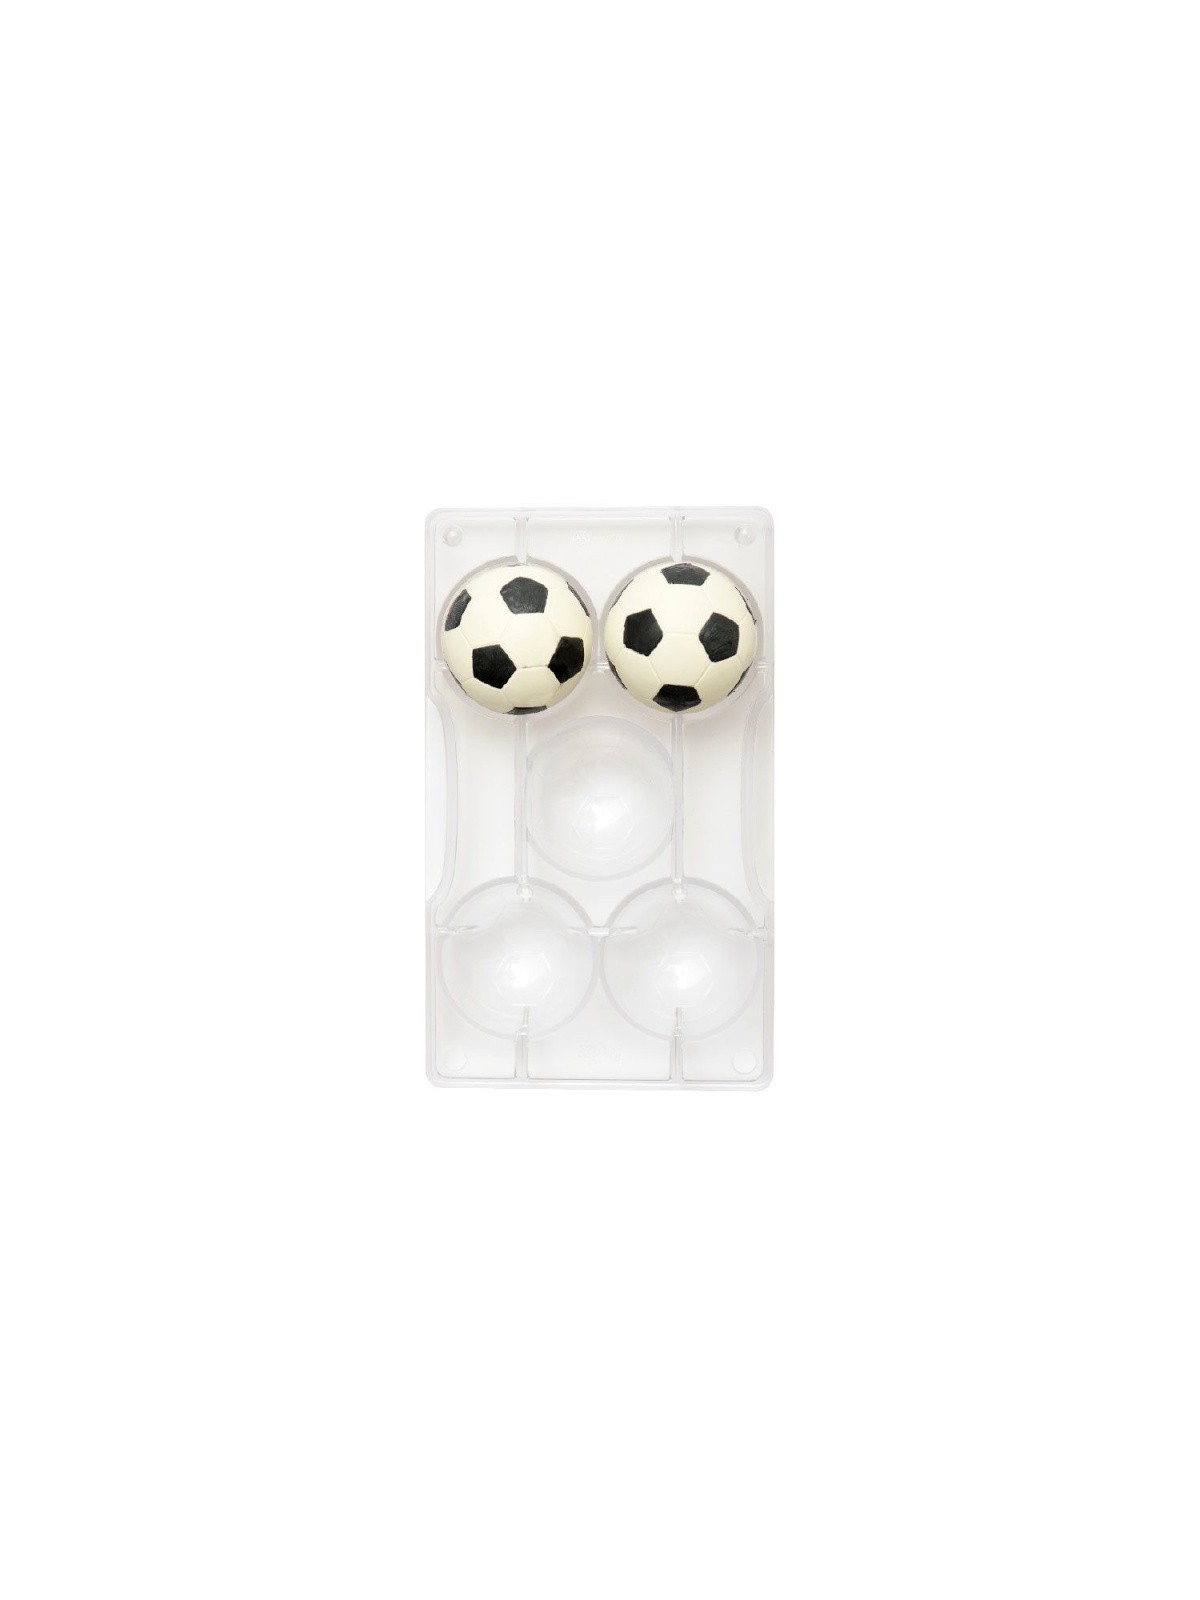 Decora Pralinenform - Fußball 5,2 cm